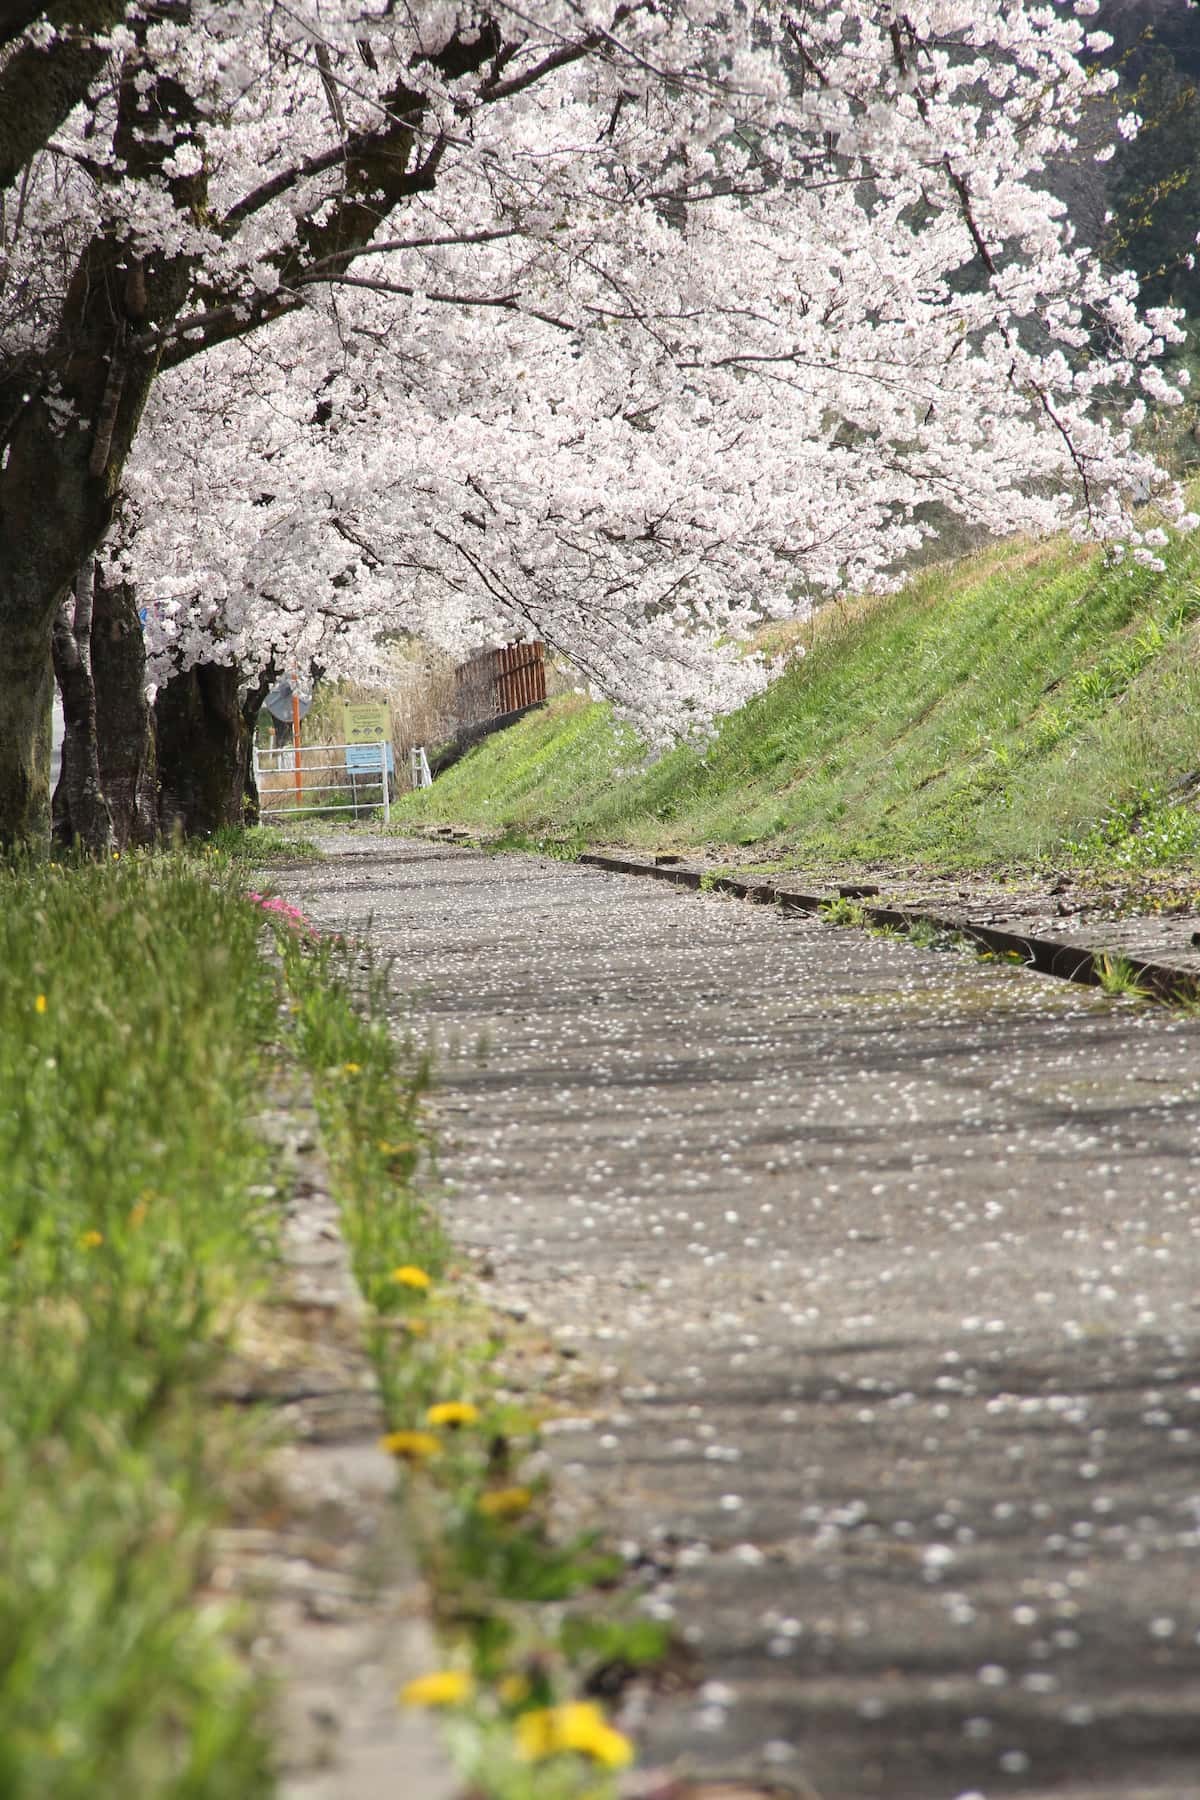 島根県美郷町のお花見スポット『旧潮駅の桜のトンネル』の開花時の様子